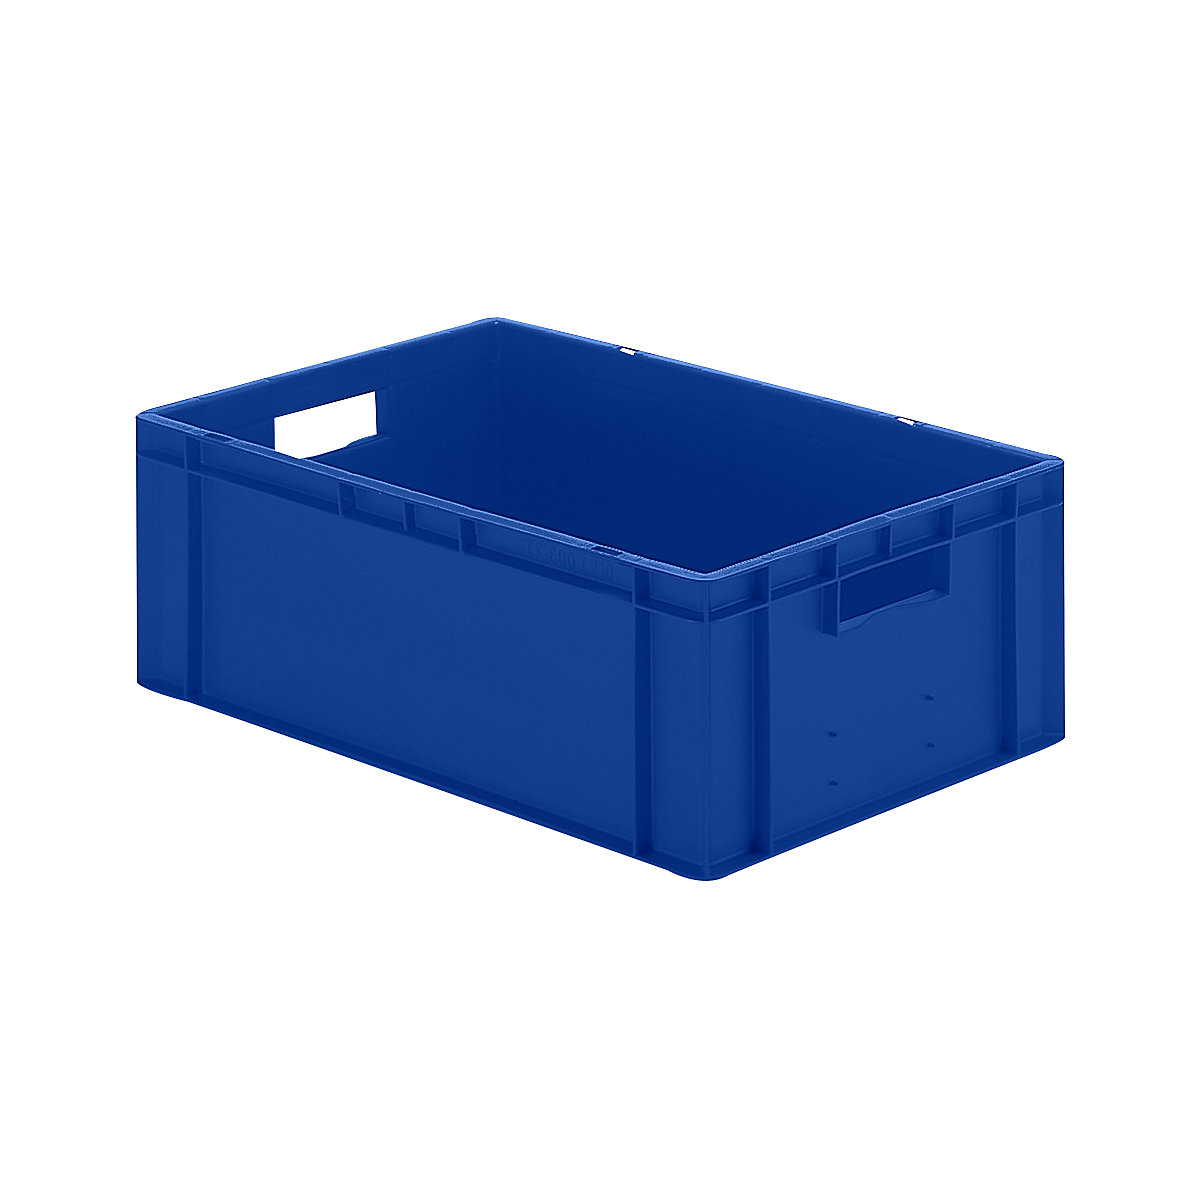 Euro-Format-Stapelbehälter, Wände und Boden geschlossen, LxBxH 600 x 400 x 210 mm, blau, VE 5 Stk